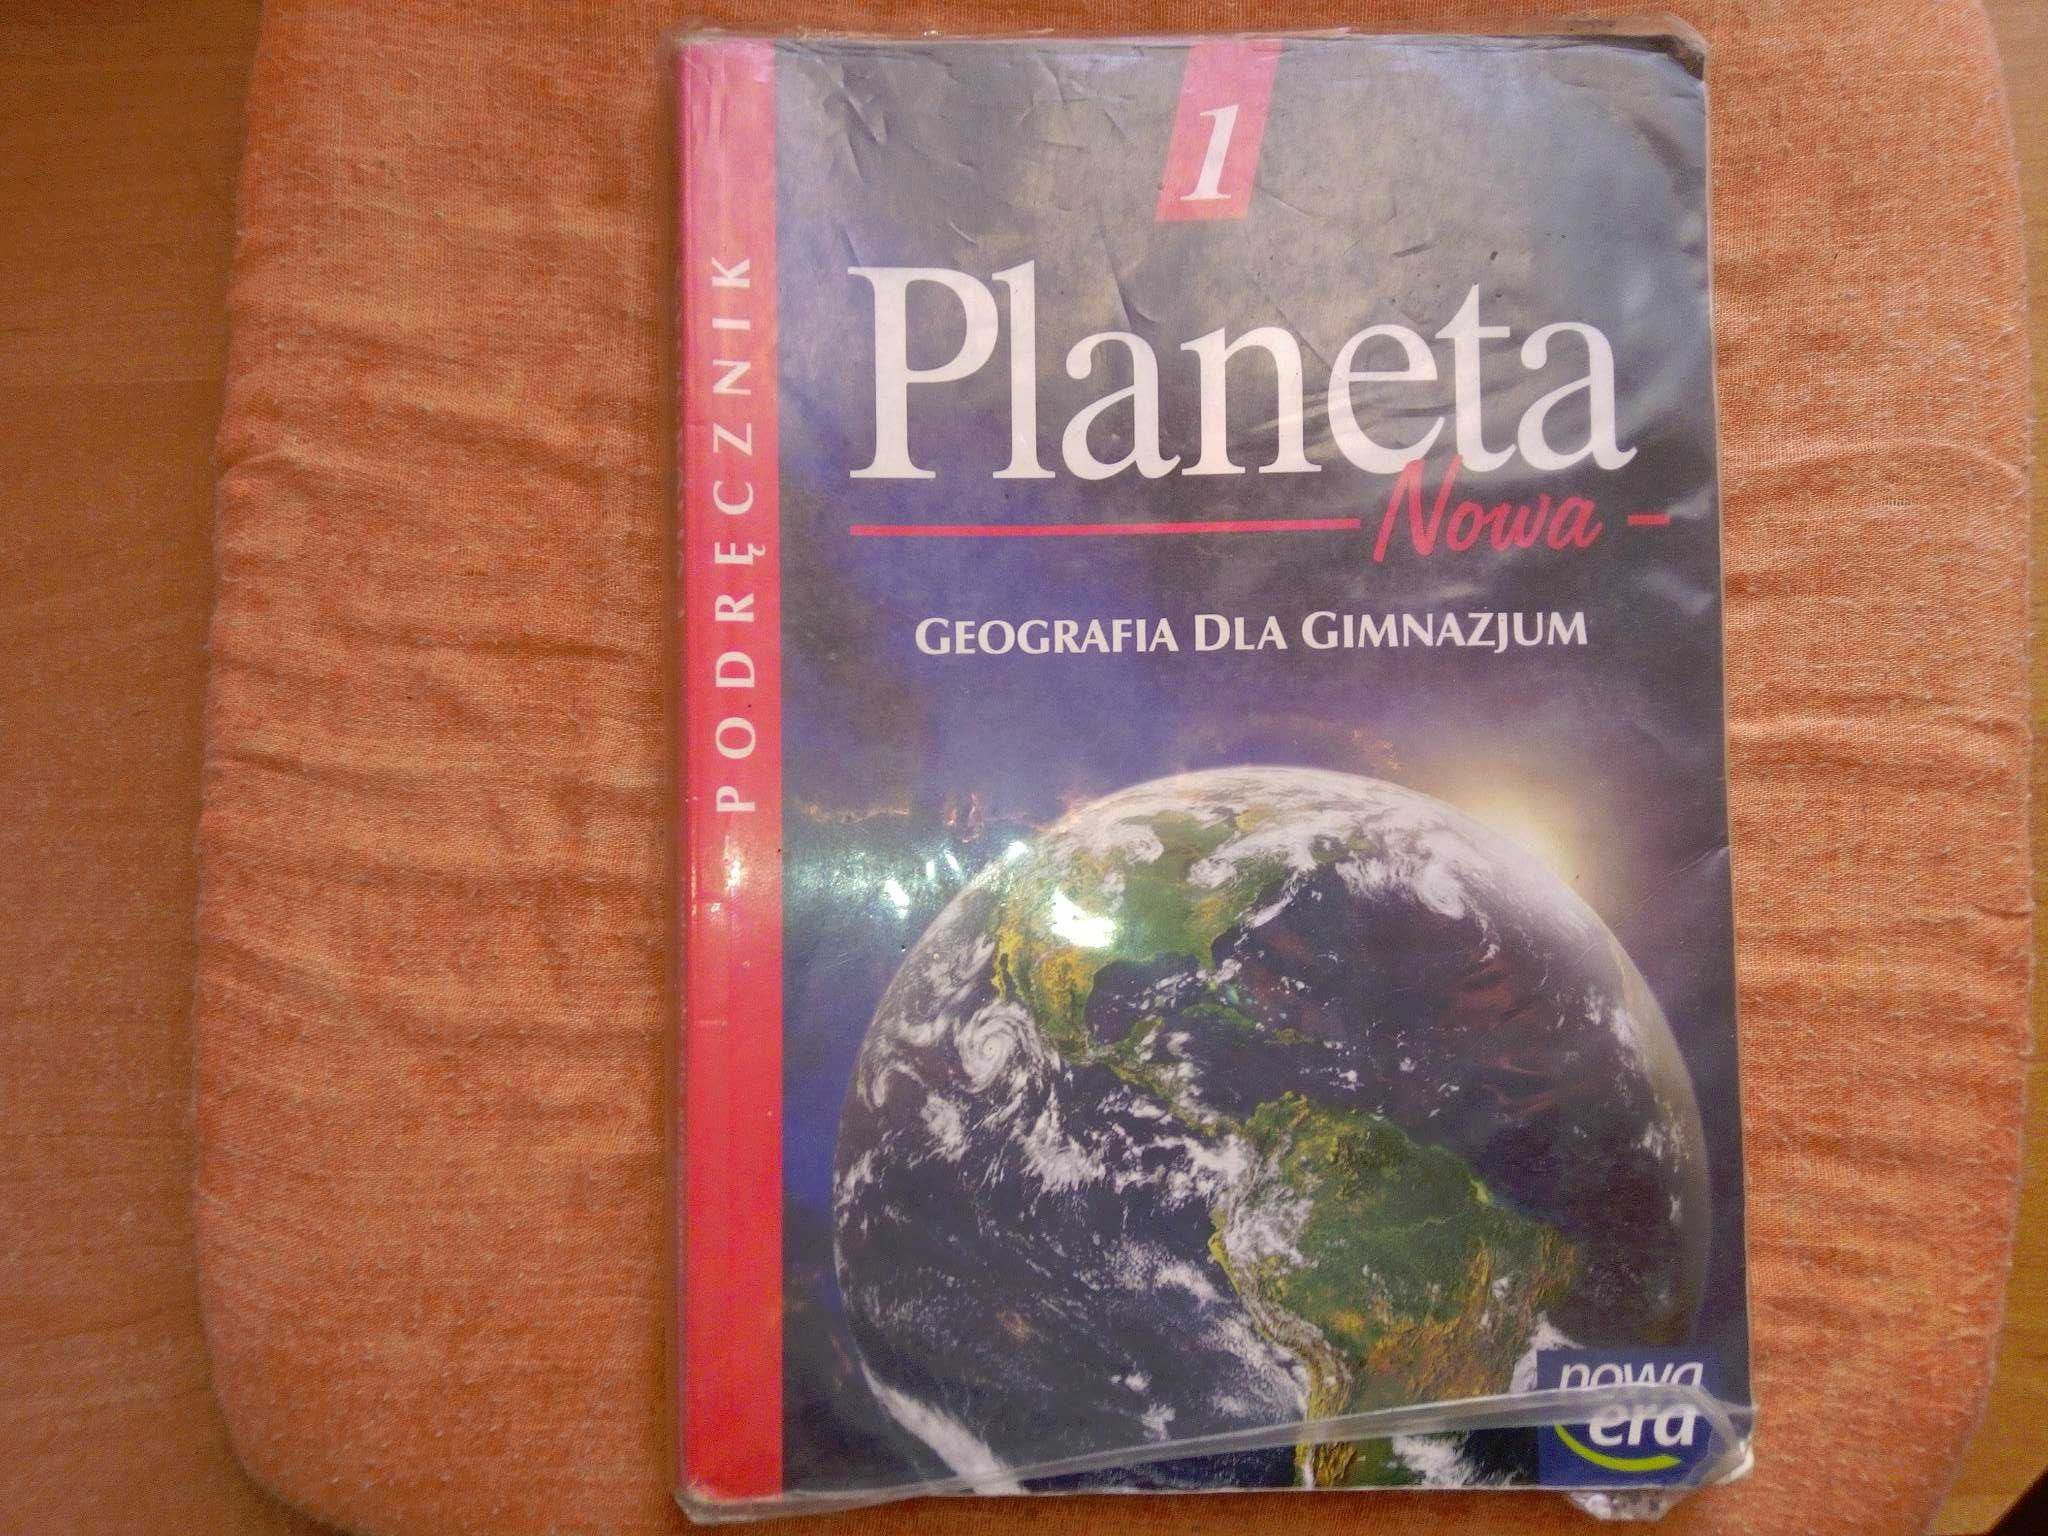 Podręcznik Planeta Nowa 1 - Geografia dla gimnazjum (2006) Nowa Era